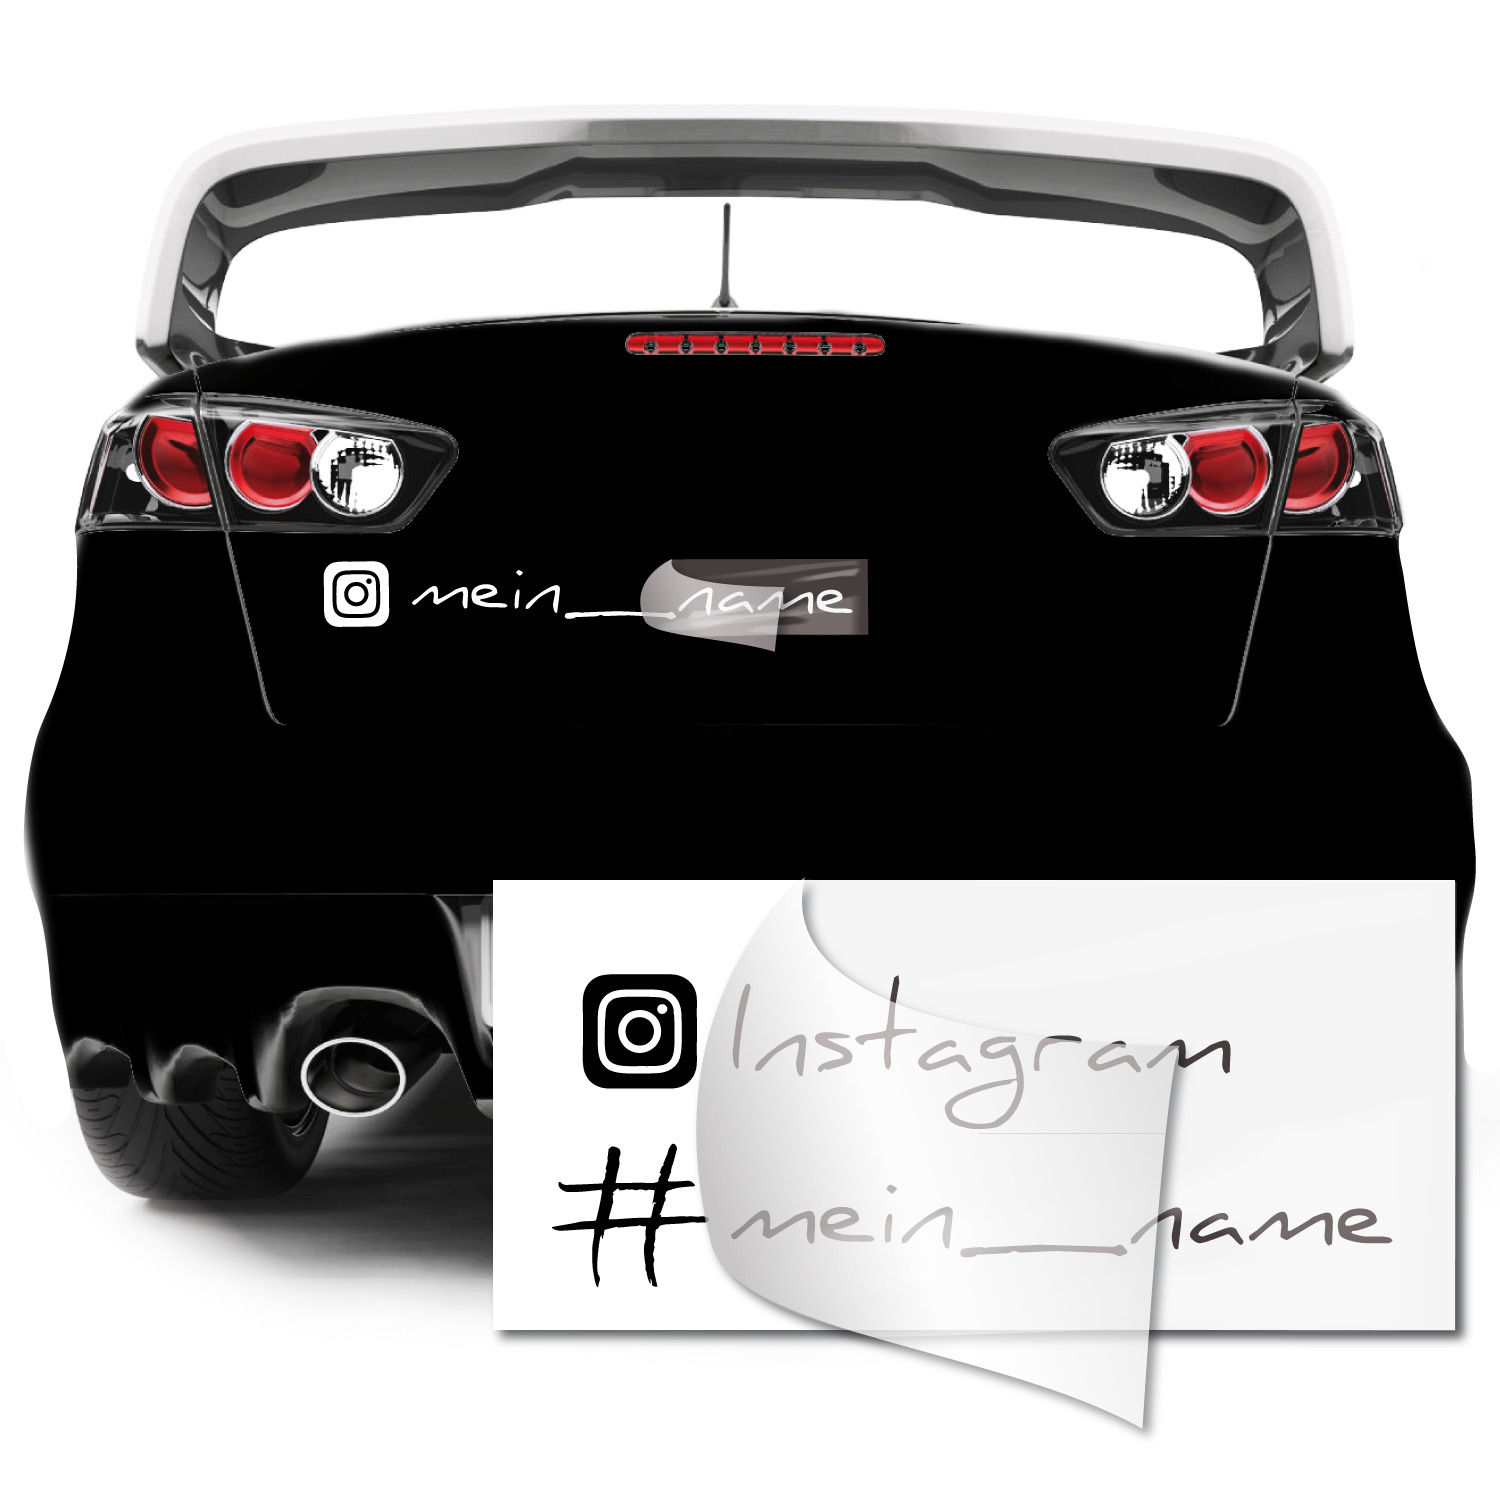 Instagram-Aufkleber, Für dein Auto!